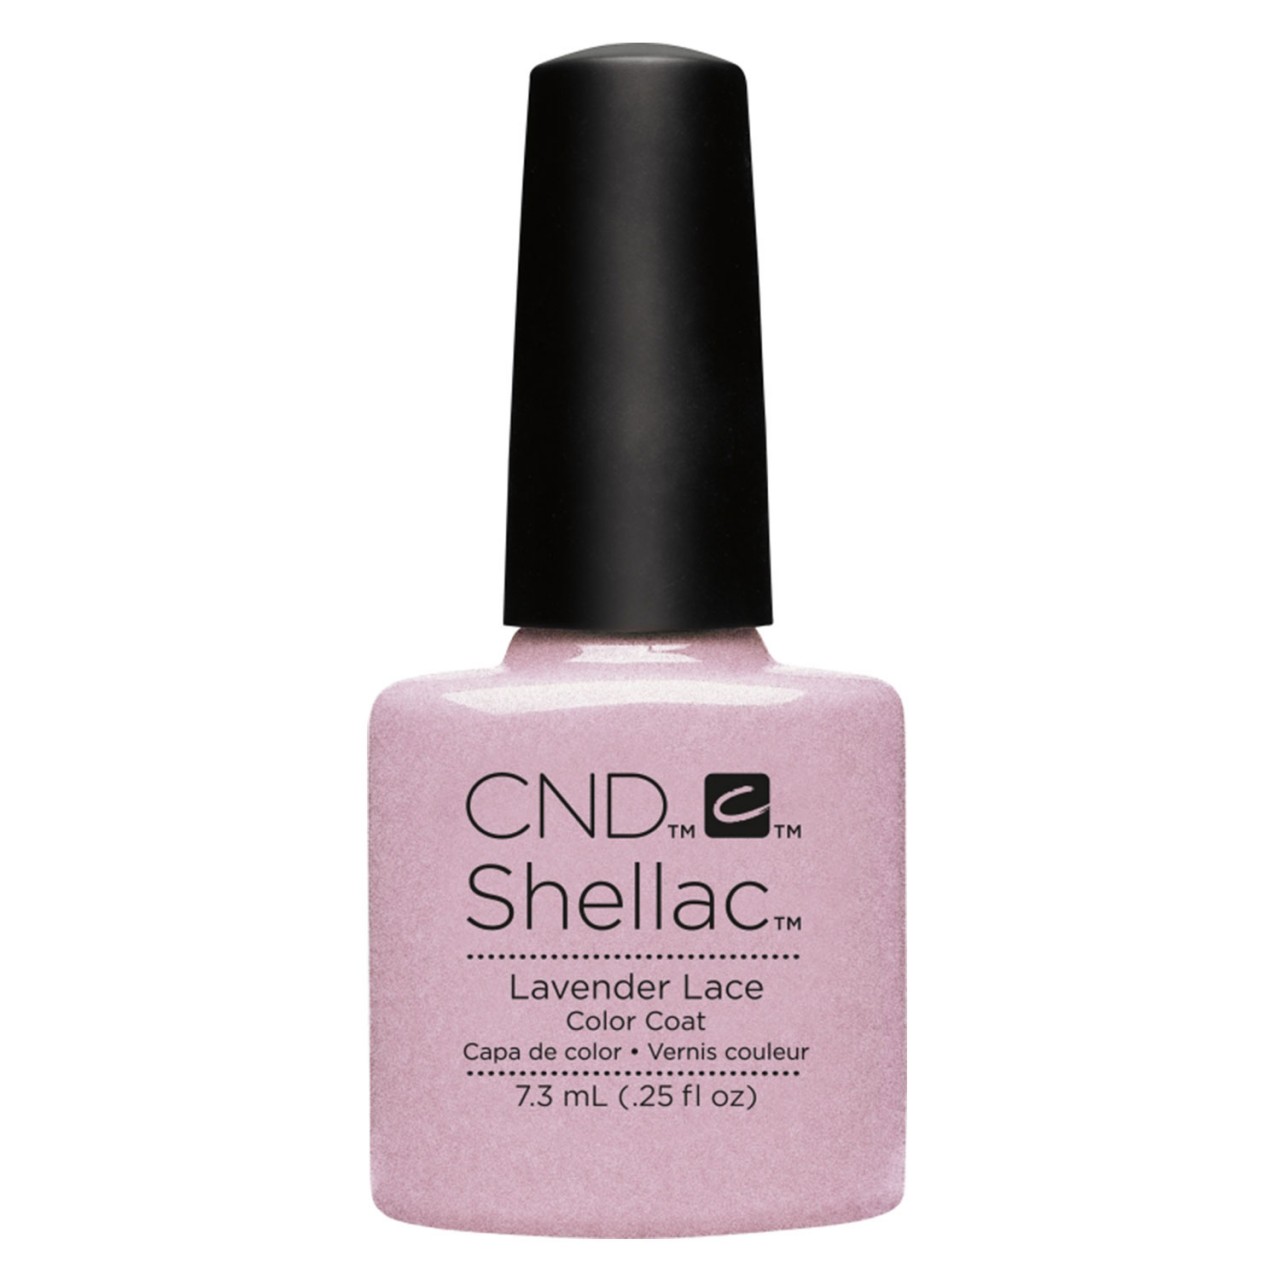 Shellac - Color Coat Lavender Lace von CND